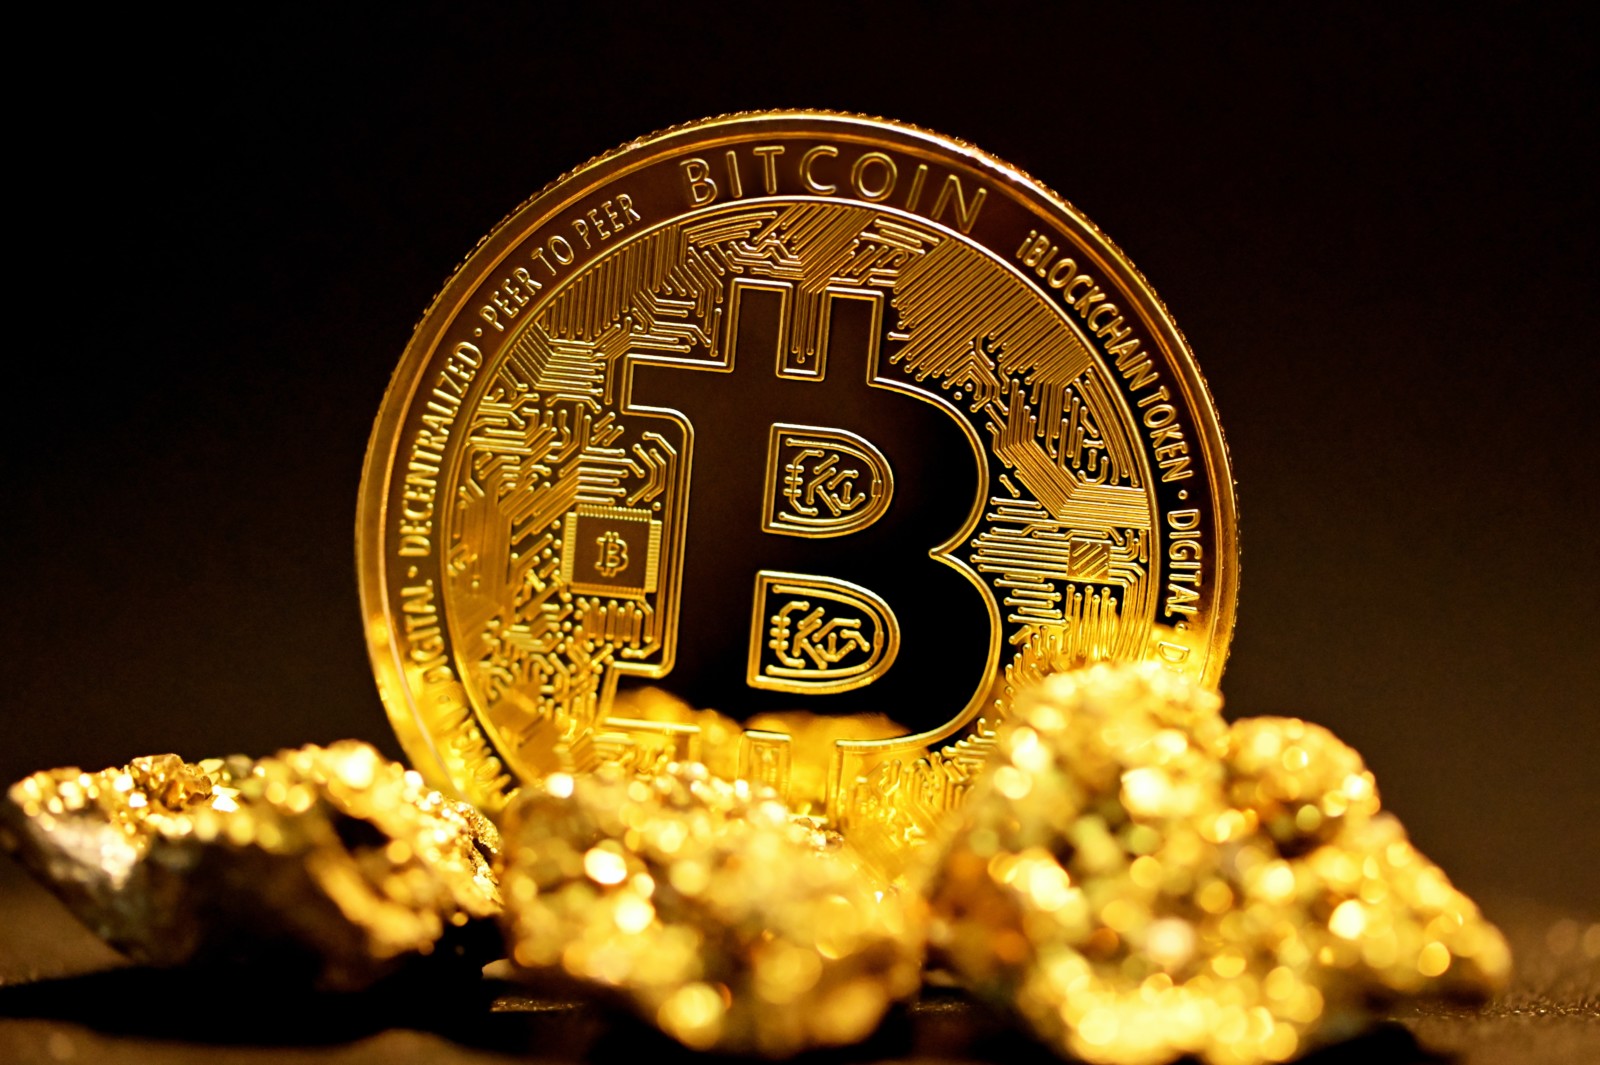 Cena Bitcoina przebija 50 000 USD po raz pierwszy od początku maja